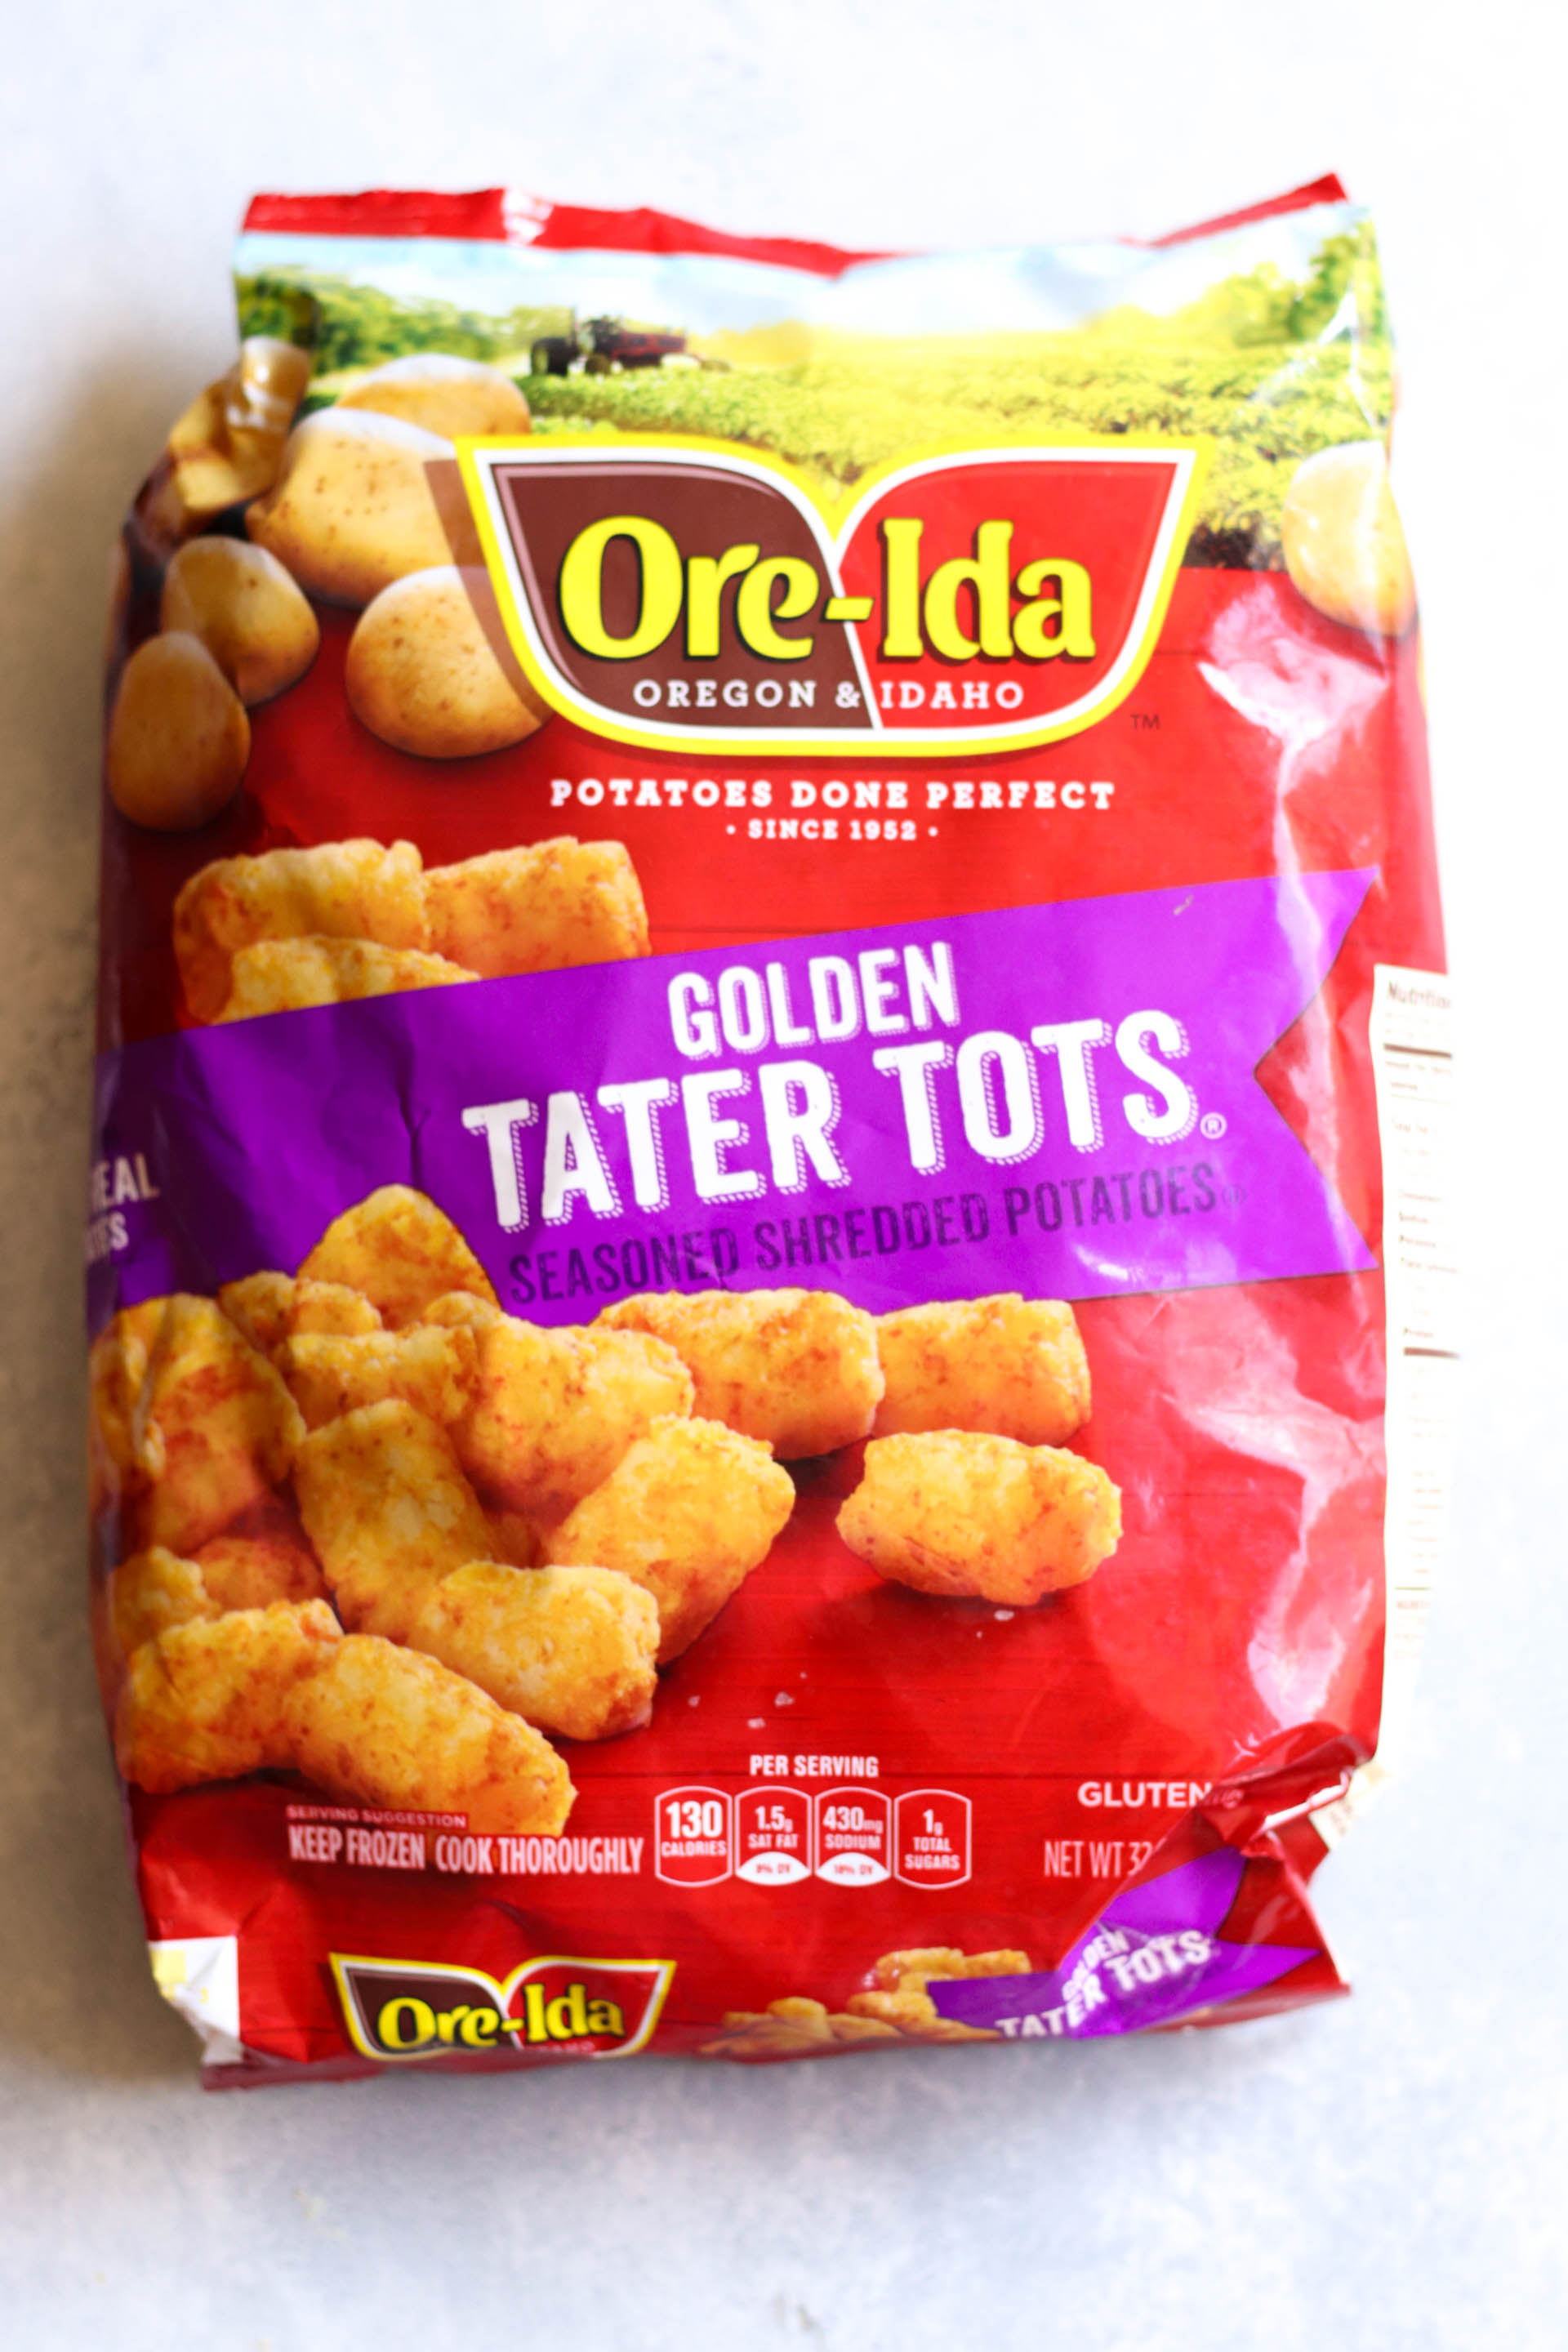 Bag of OreIda Golden Tater Tots